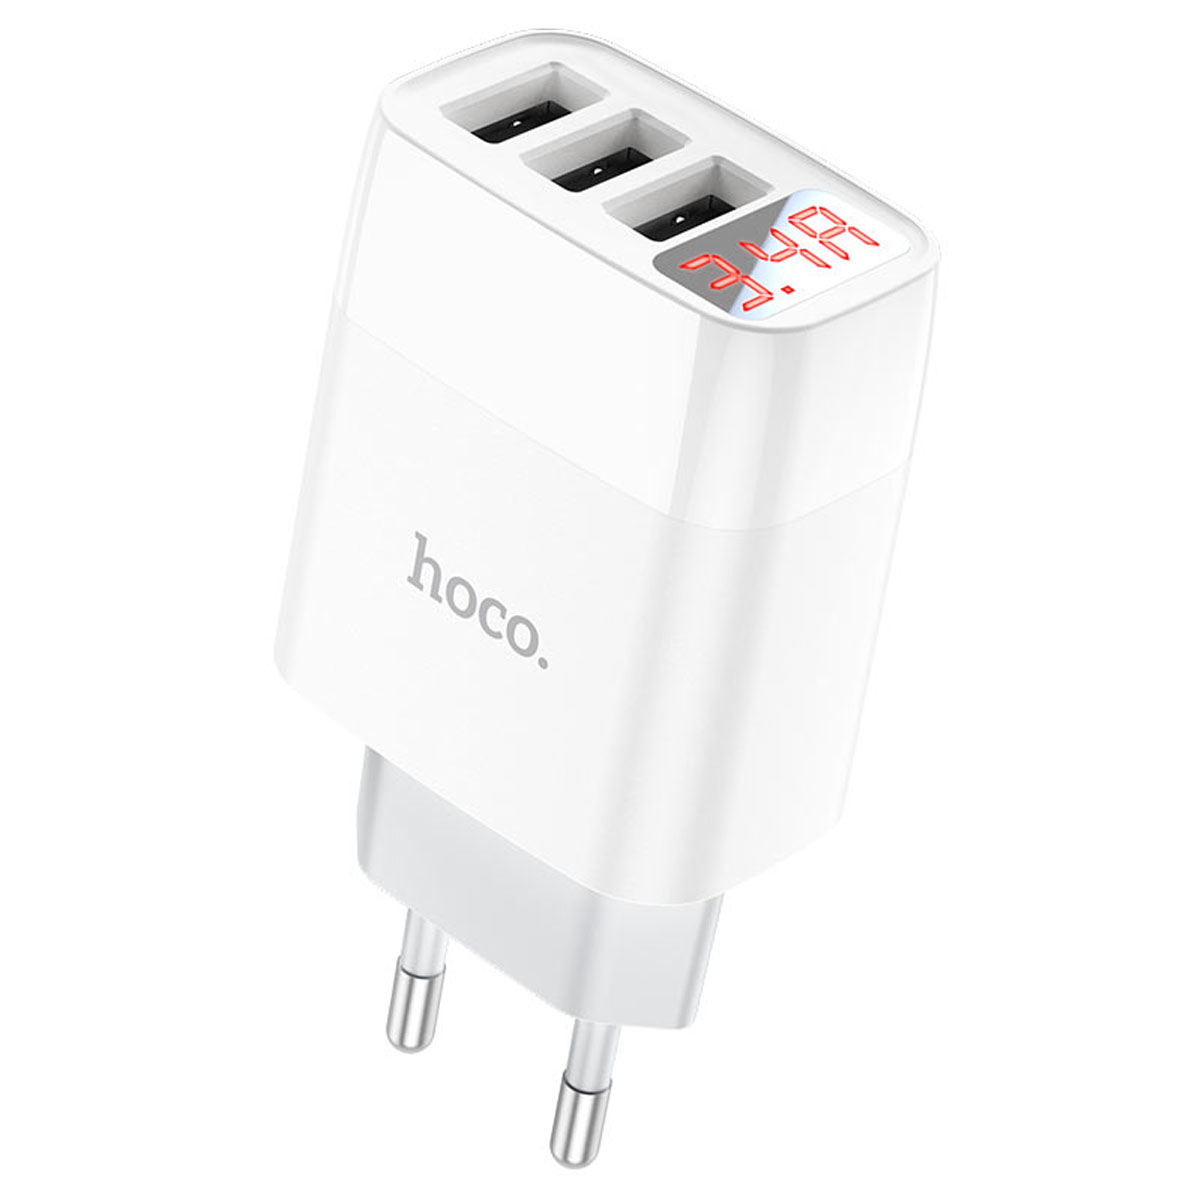 СЗУ (Сетевое зарядное устройство) HOCO C93A Easy, 3.4A, 3 USB, Led дисплей, цвет белый